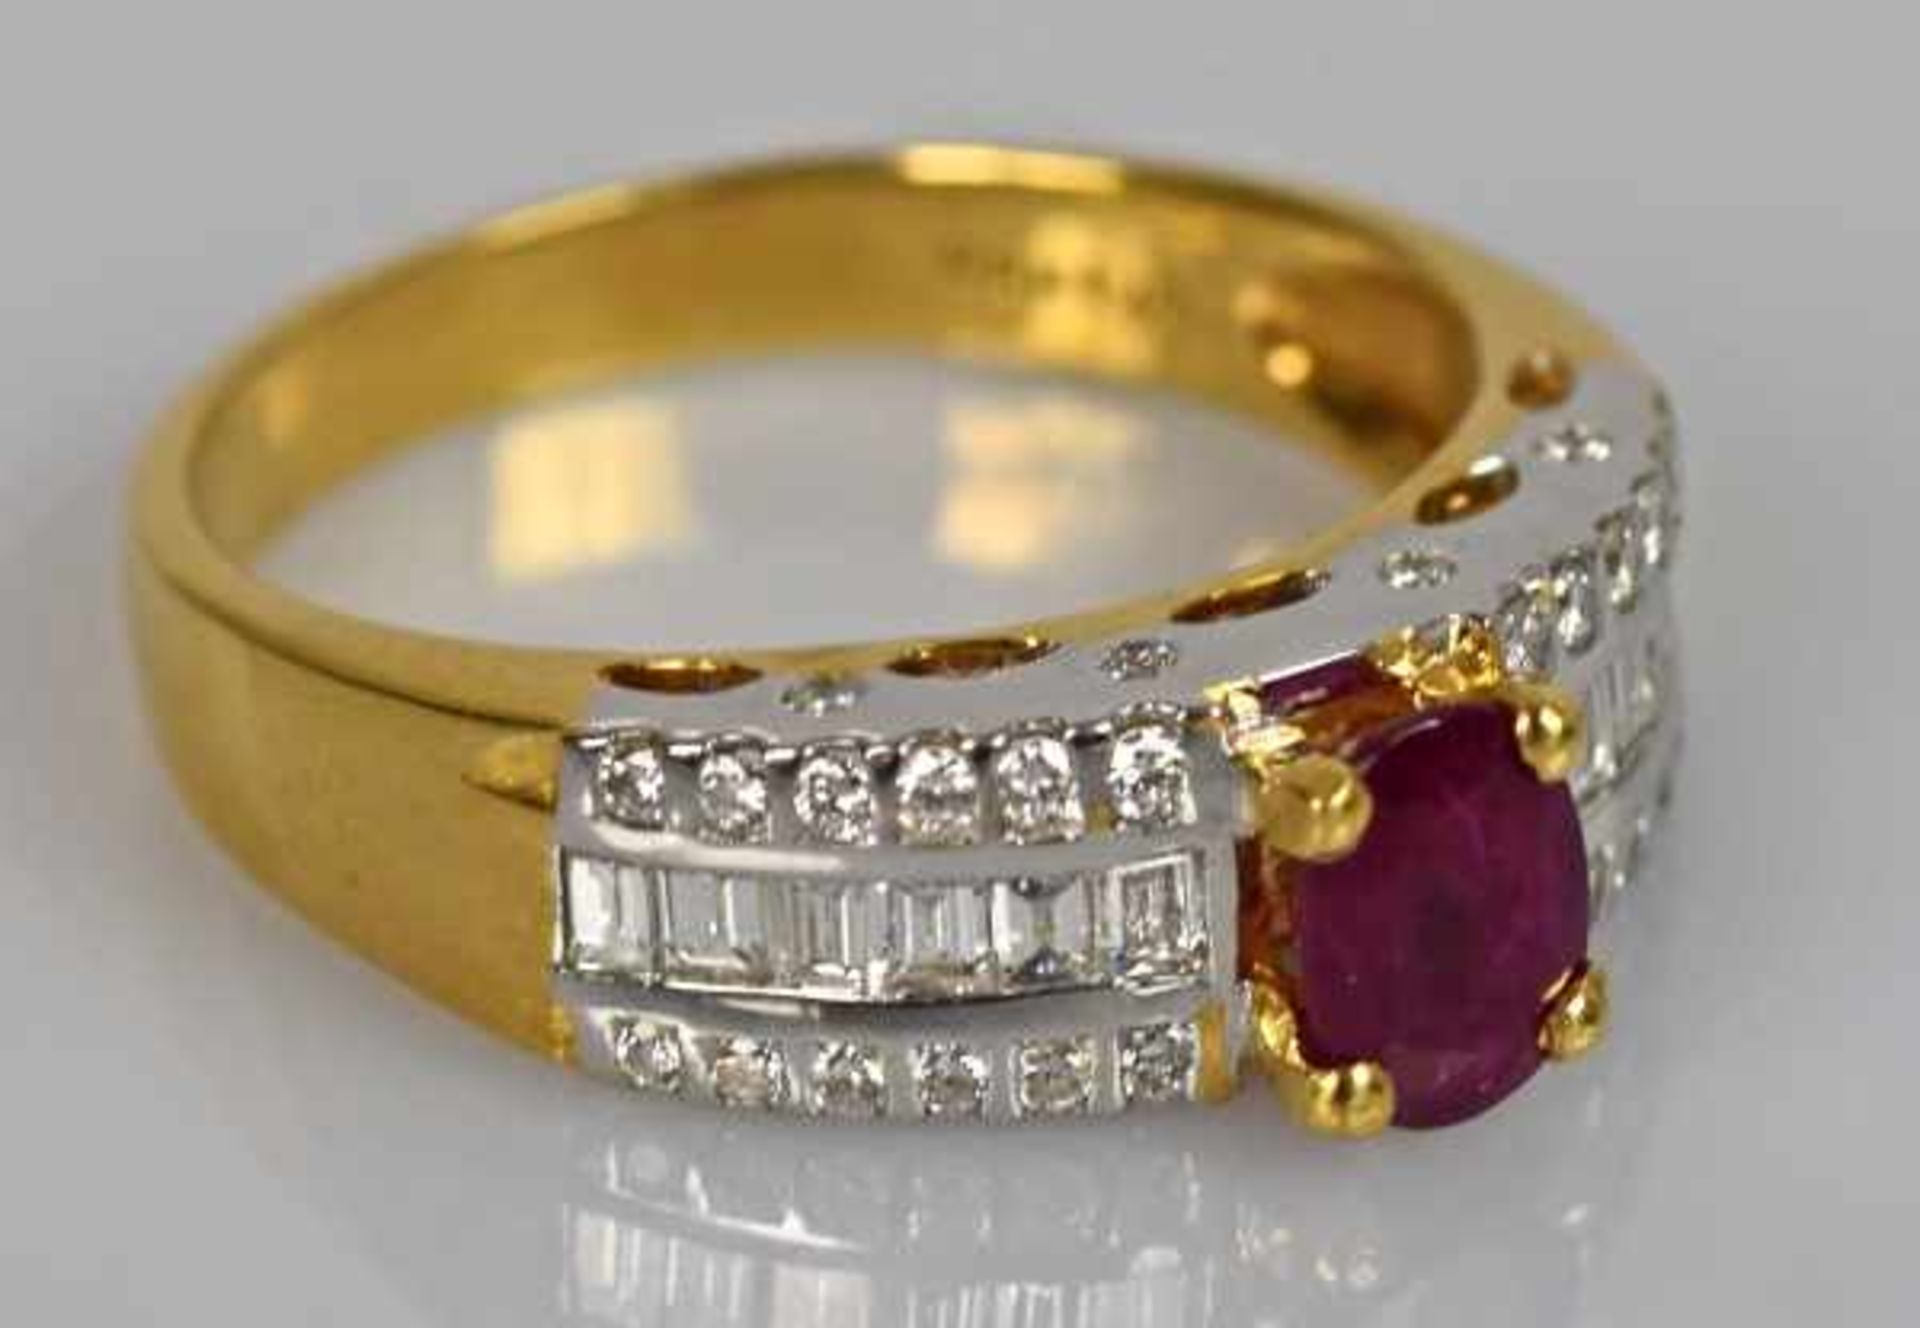 RUBINRING ovaler Rubin mit schöner Farbe 7x5mm, die Schultern besetzt mit je 6 Diamantvierecken,